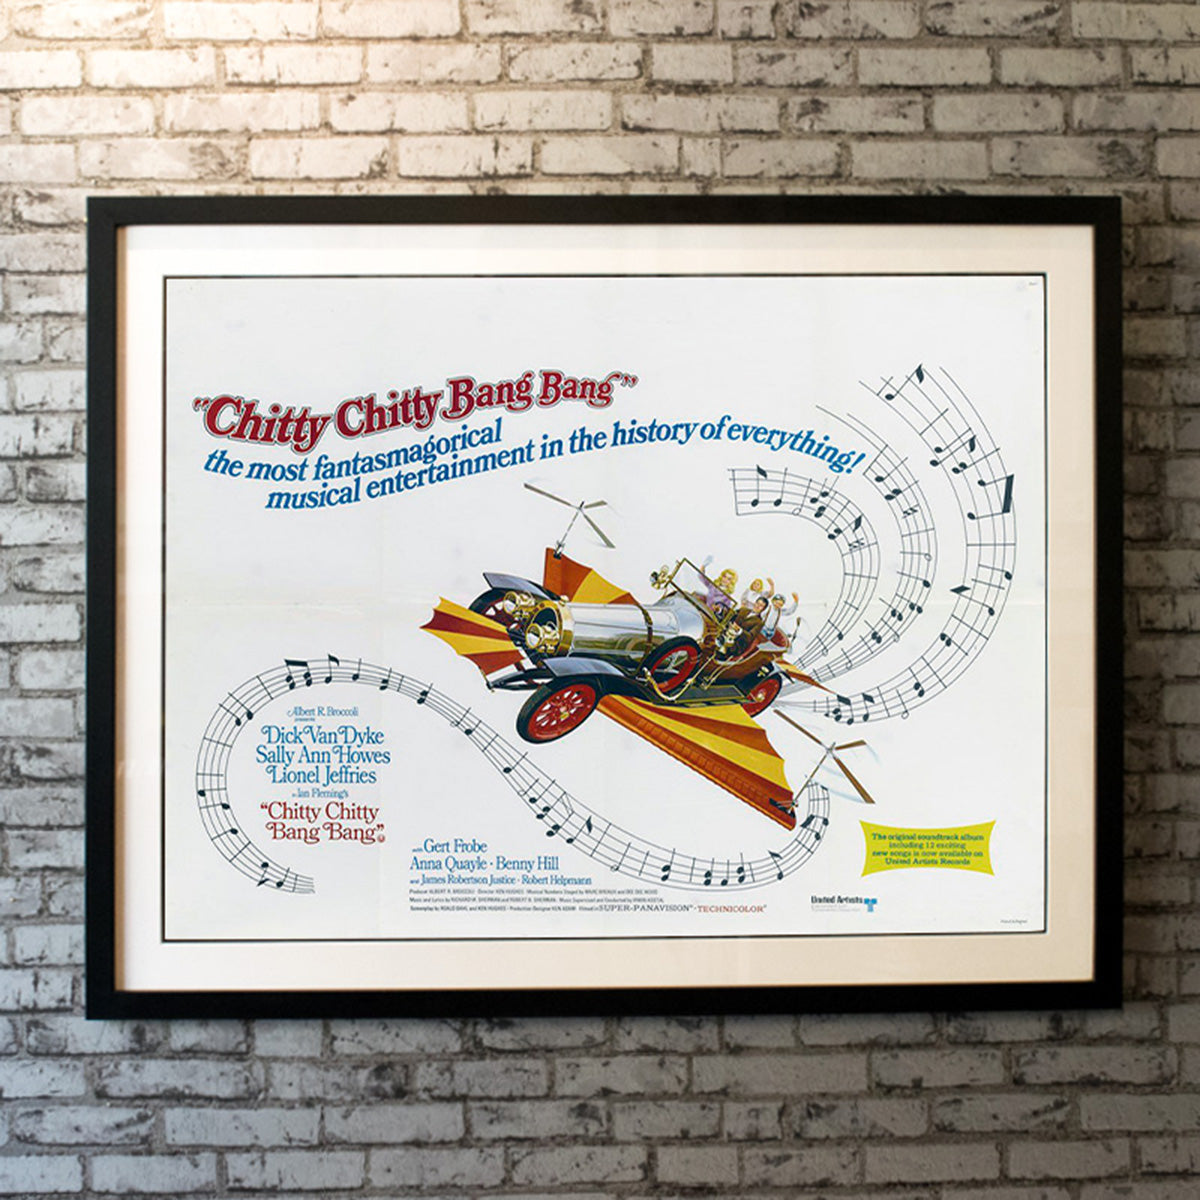 Original Movie Poster of Chitty Chitty Bang Bang (1968)